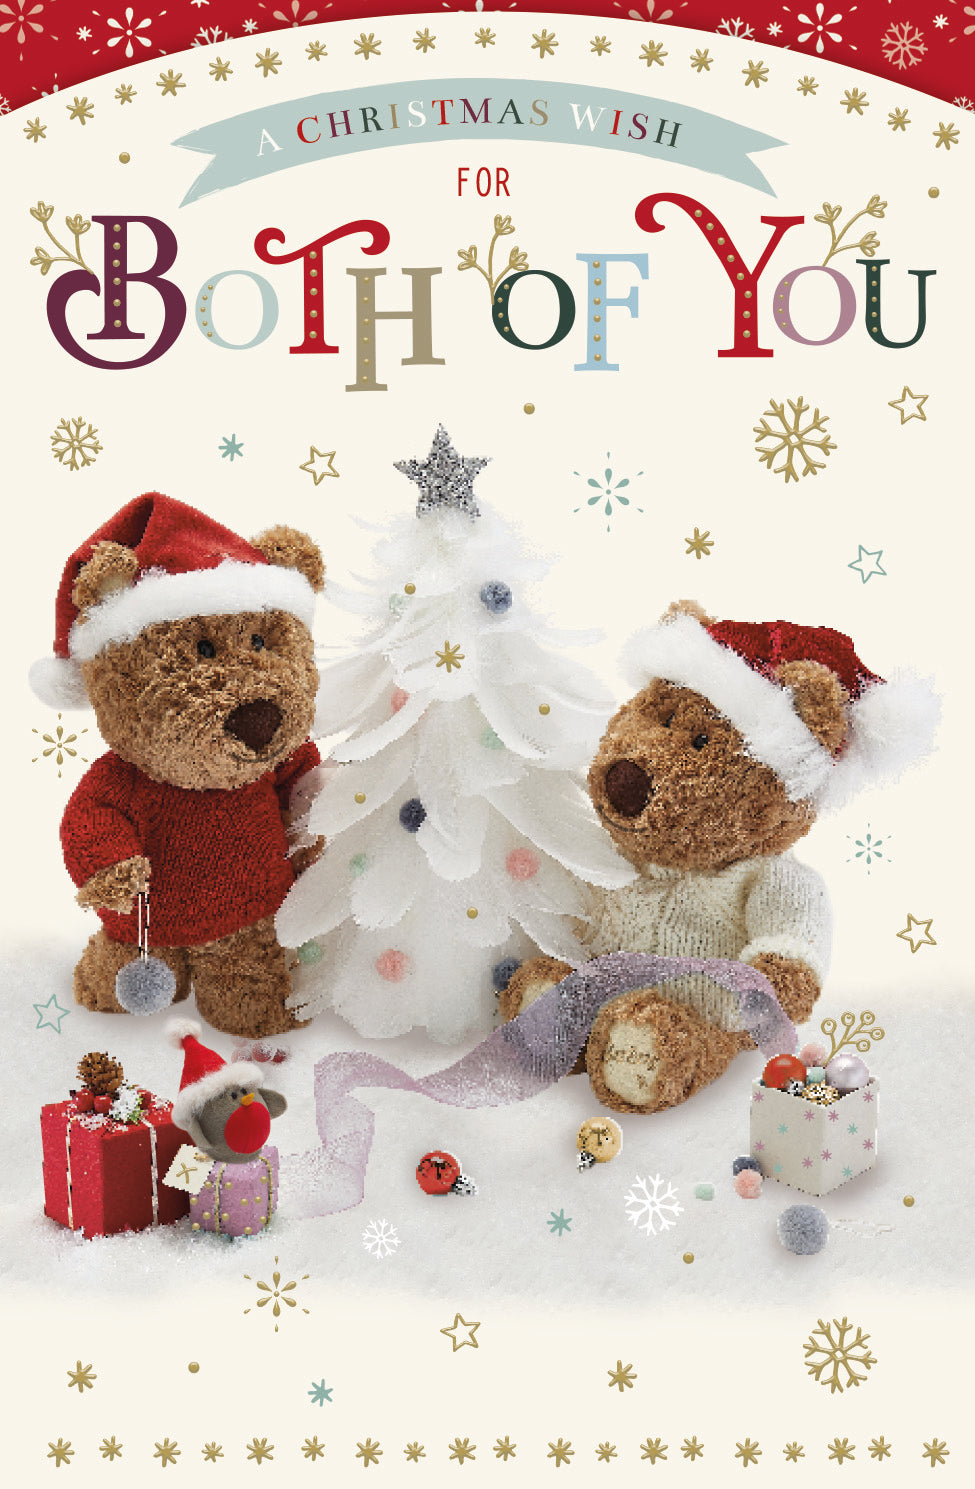 Both of you Christmas card - Xmas bears